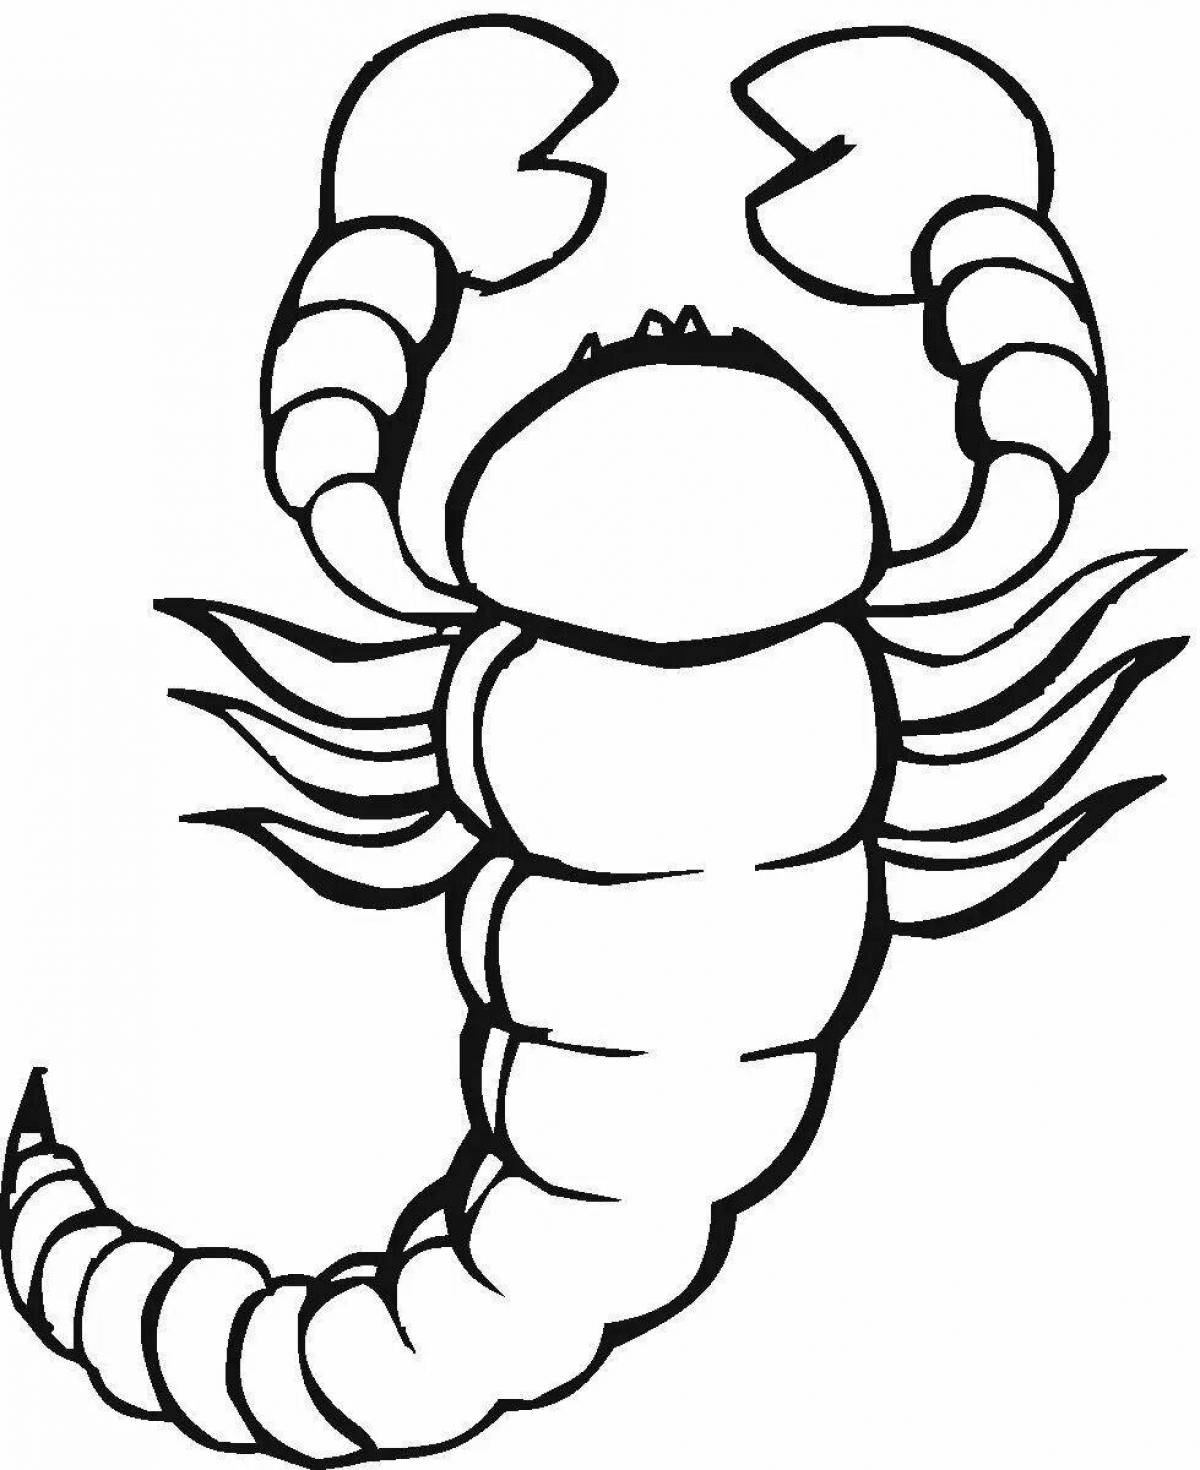 Scorpion #4